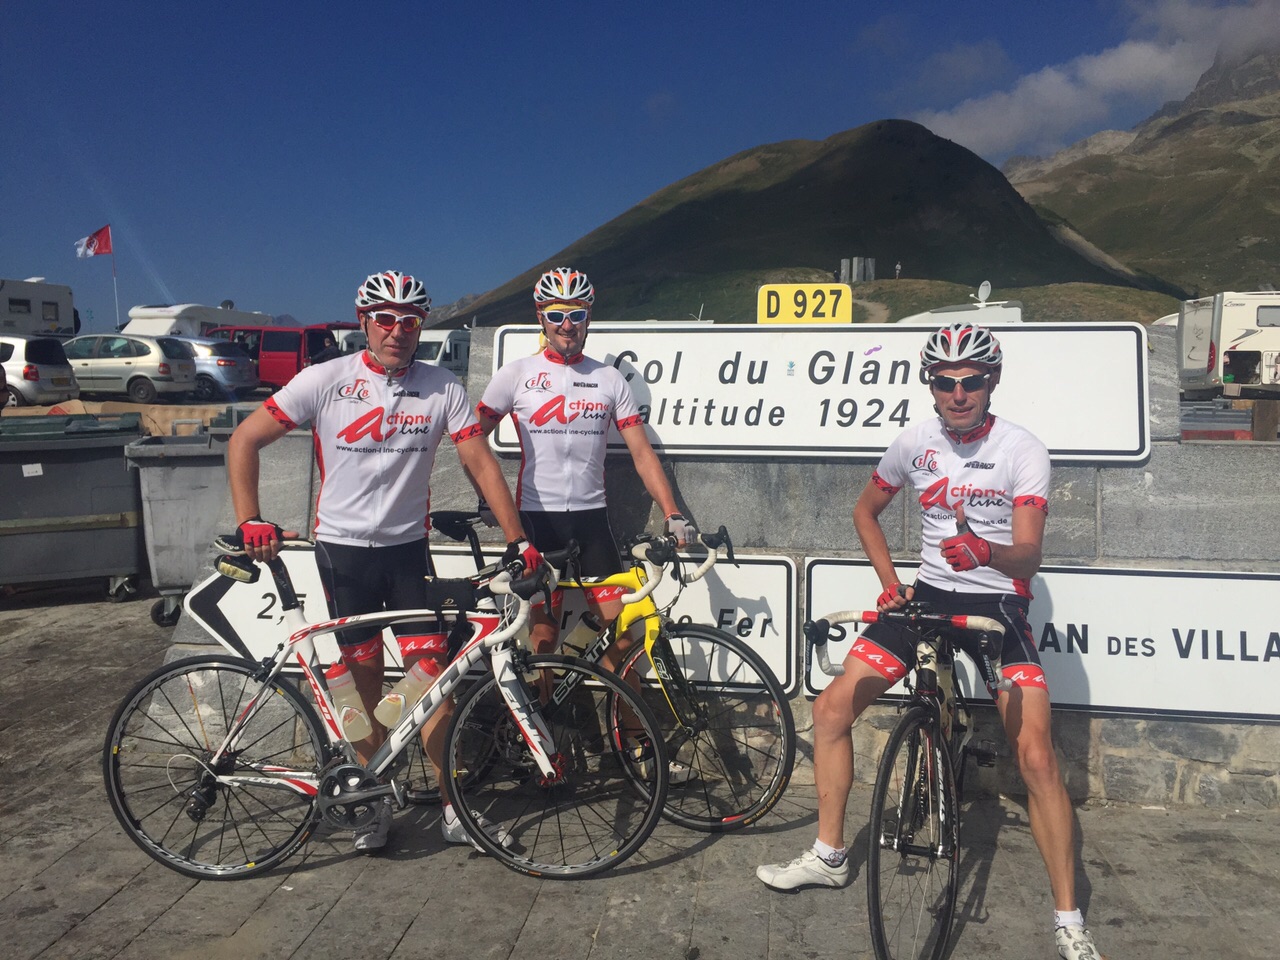 Riders at the Col de Glandom in the Alps